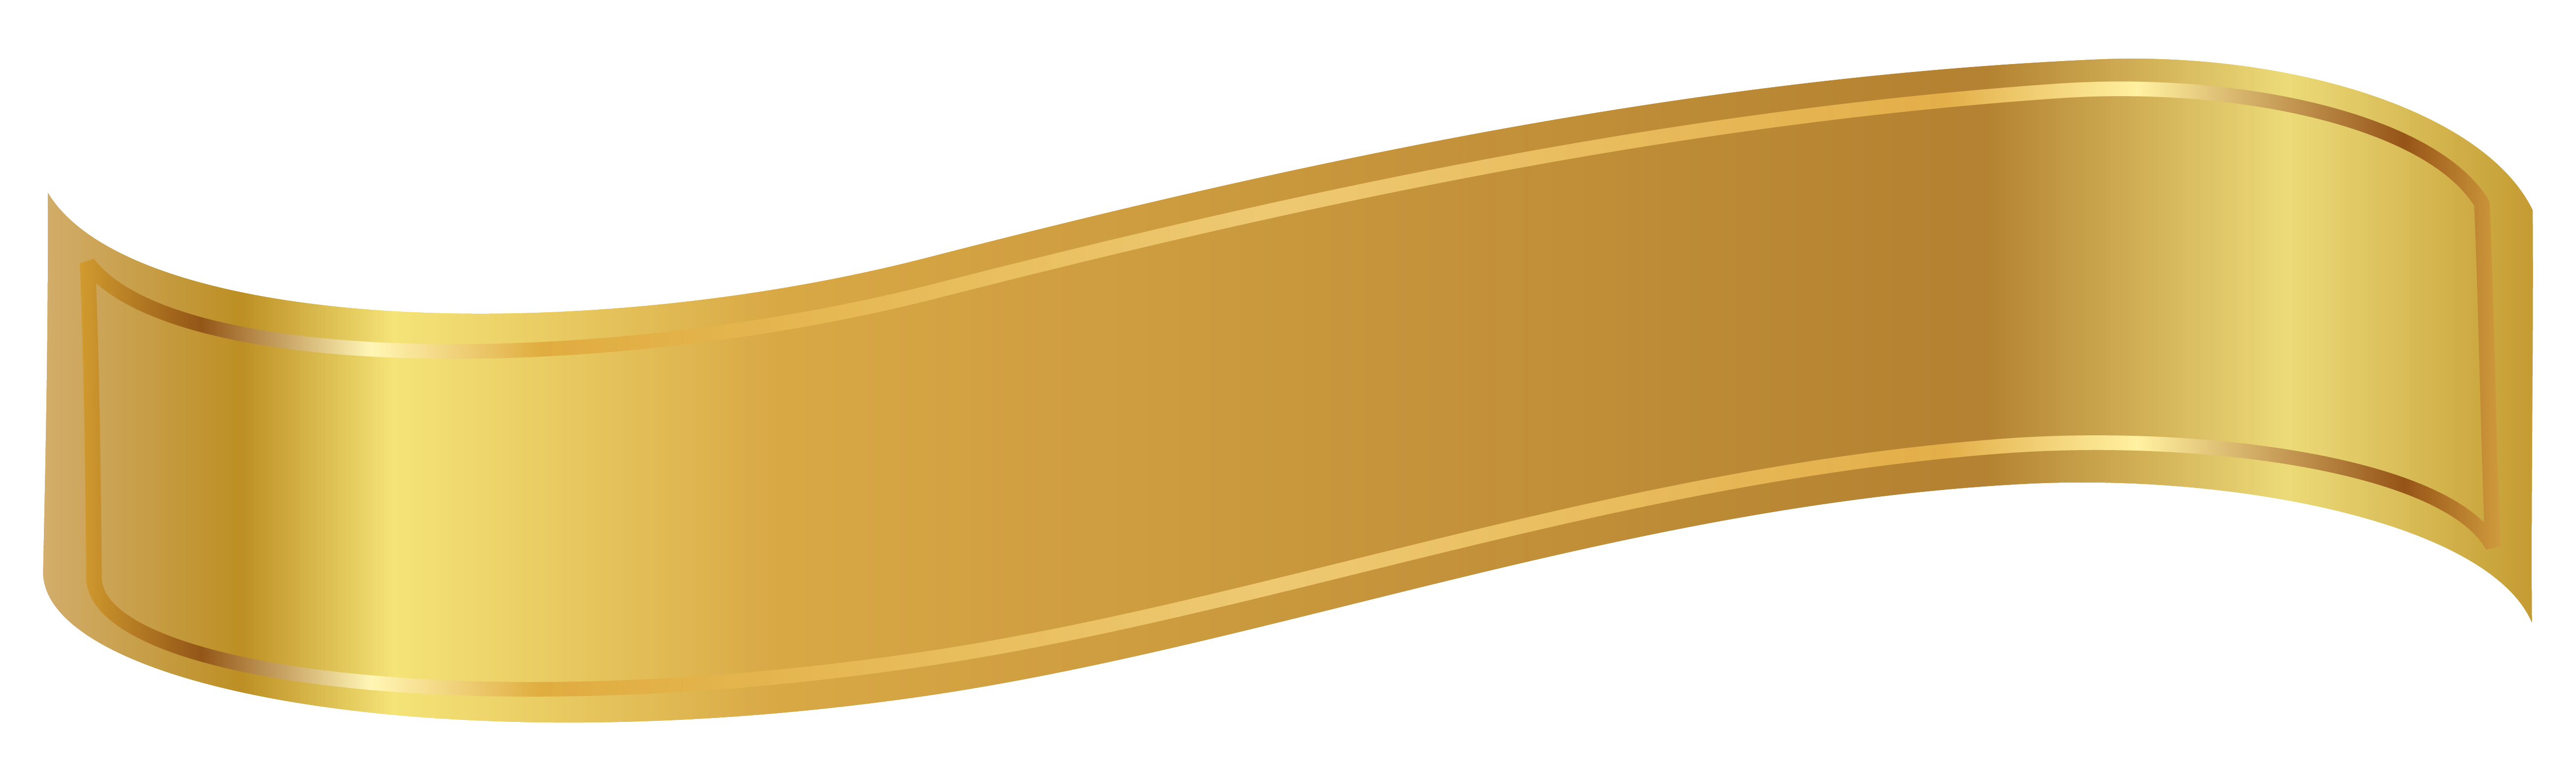 Golden Ribbon PNG File